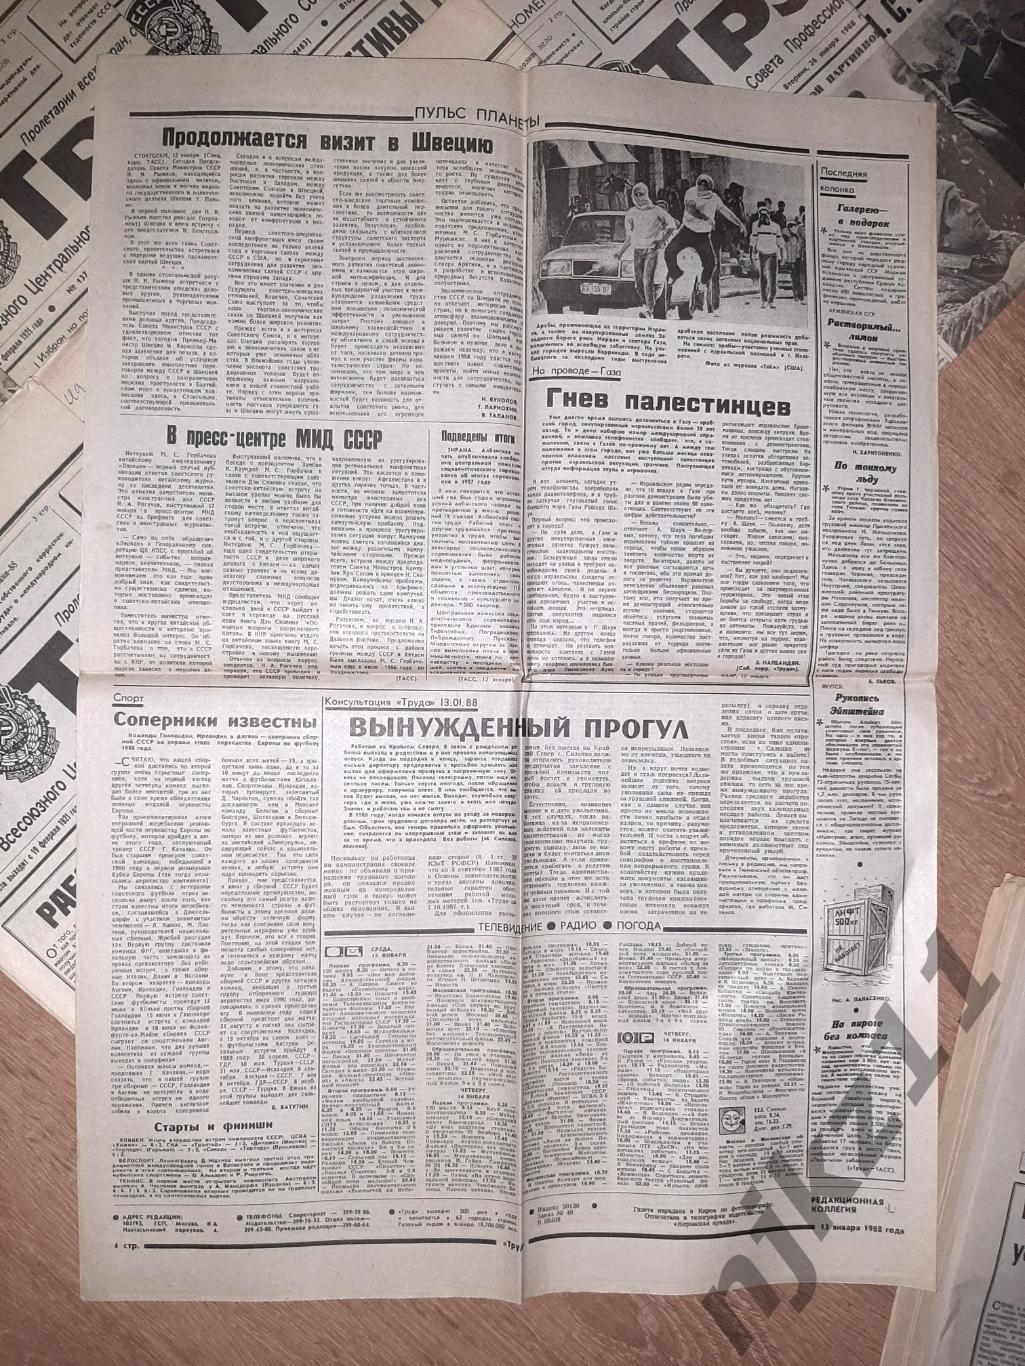 22 газеты Труд за 1988-89г. Есть ЧЕ 1988г по футболу, есть спорт 6